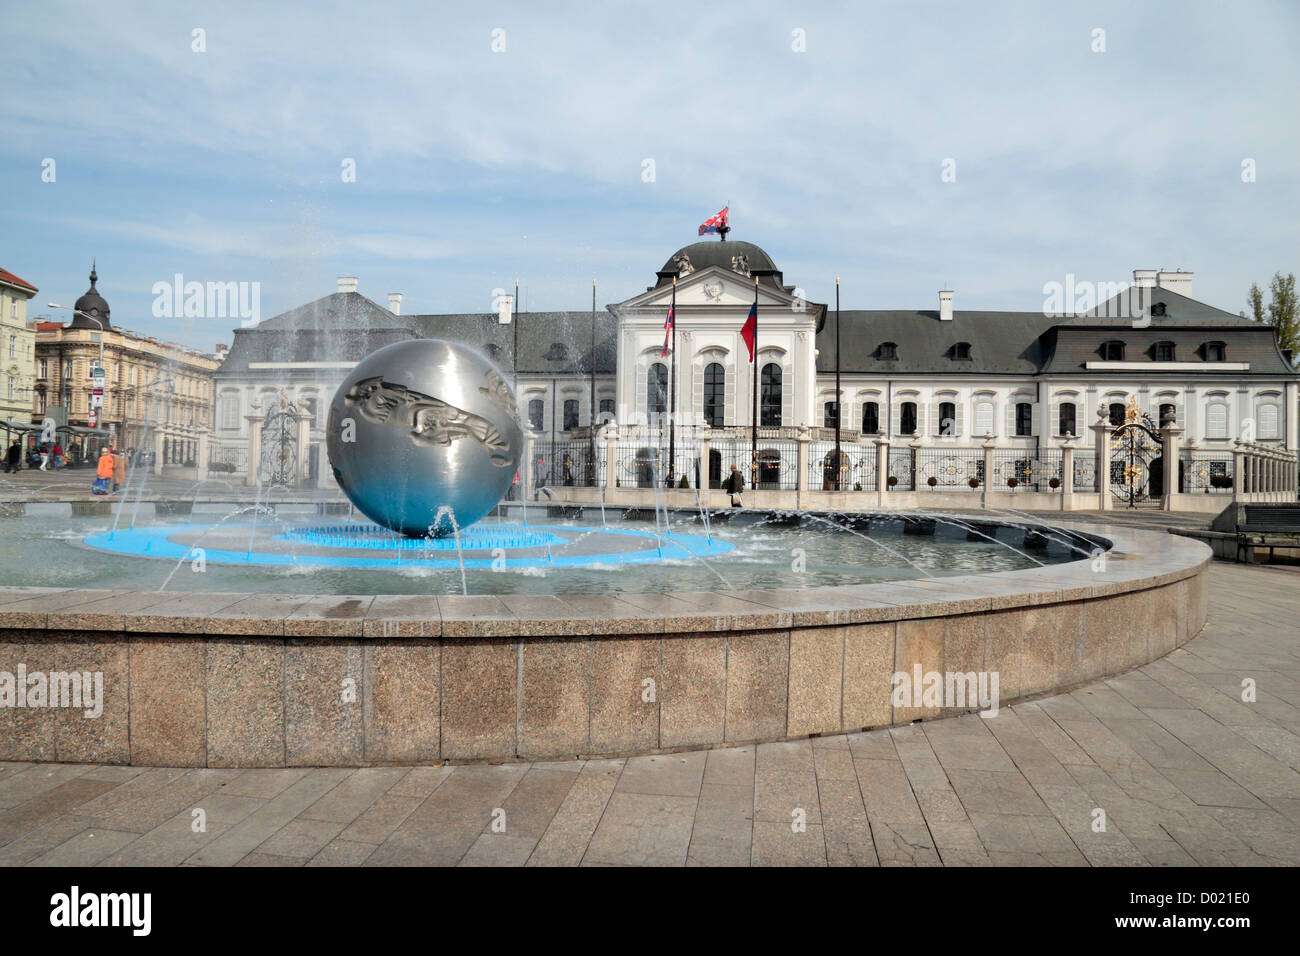 Le Globe fontaine, Garden Palace du comte Grassalkovich (Palais Présidentiel) & Jardins Grassalkovich, Bratislava, Slovaquie. Banque D'Images